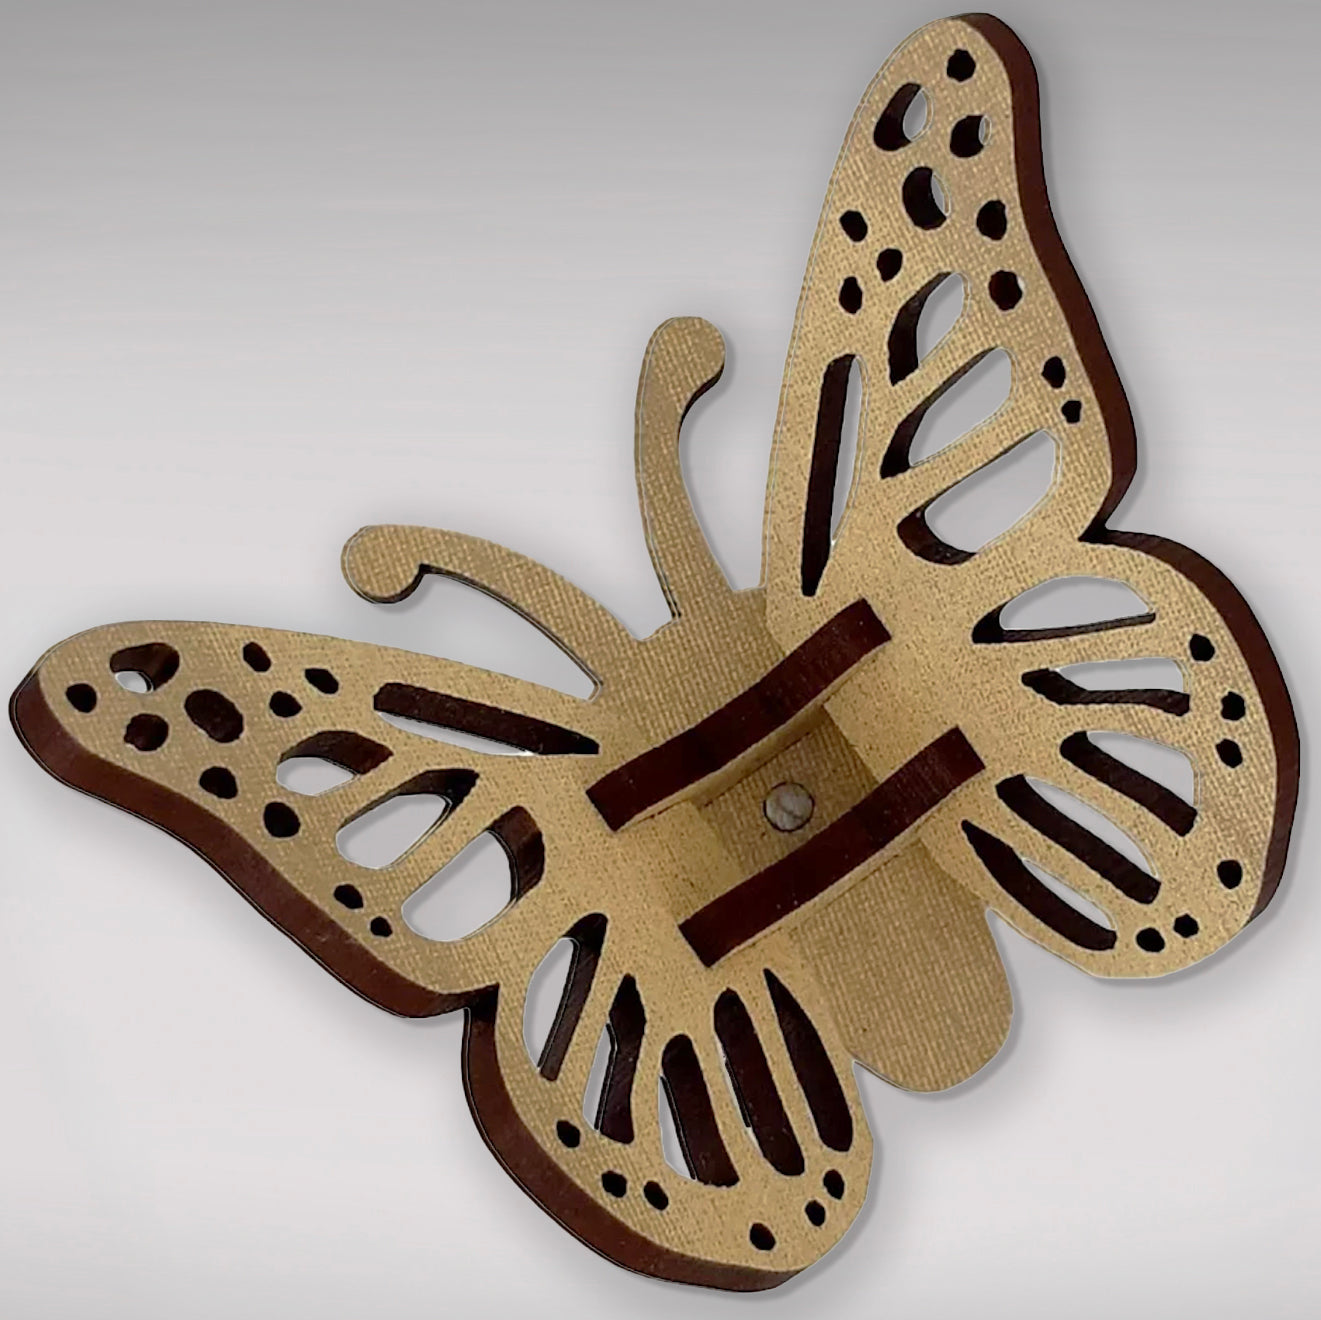 Flat-pack Kitset Wooden Model - Mini Butterfly - Red Pattern